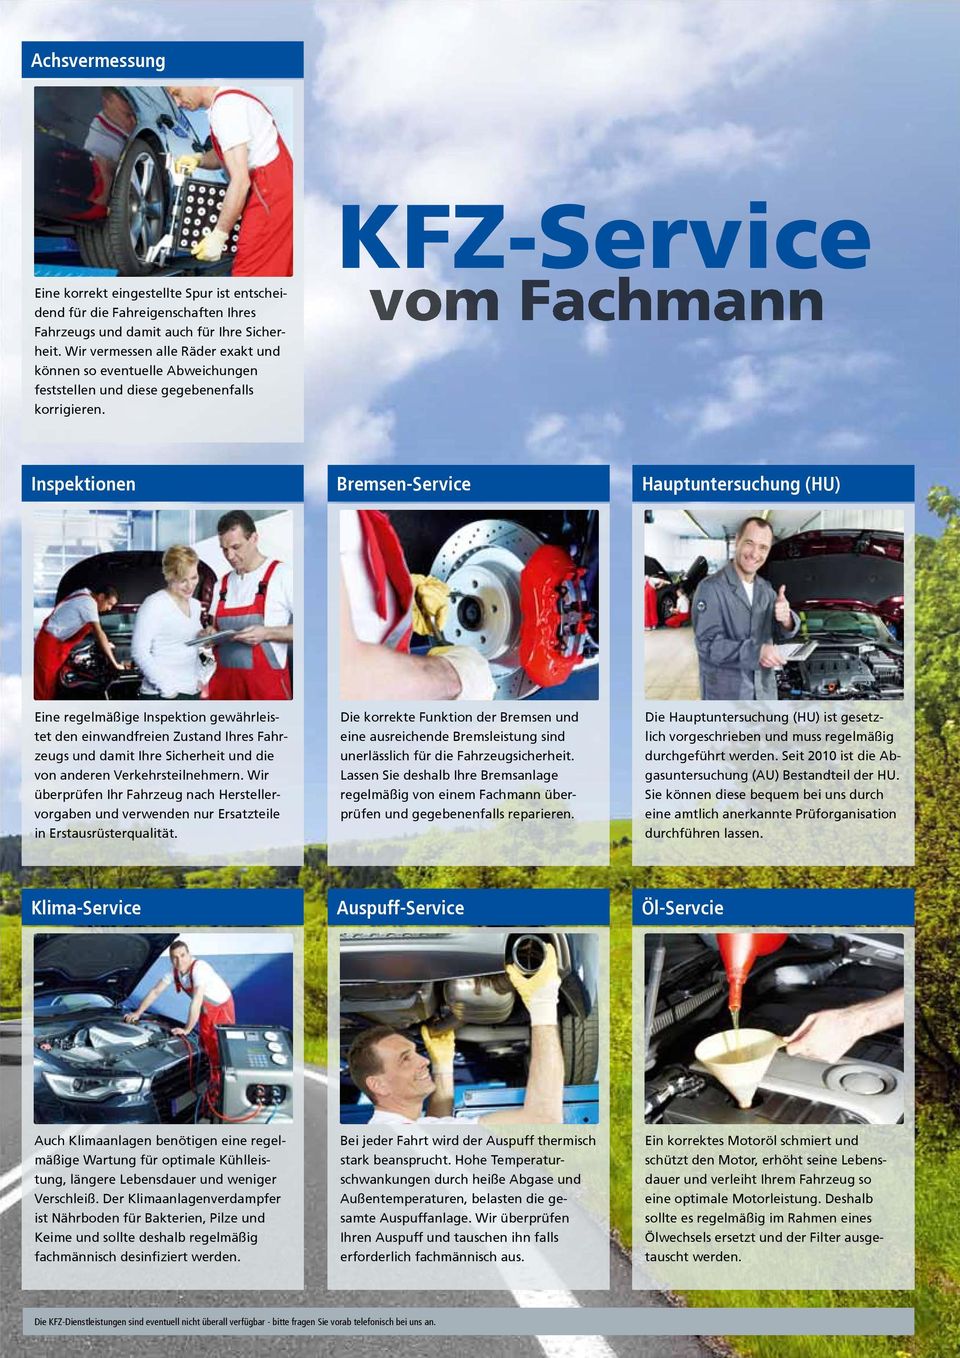 KFZ-Service vom Fachmann Inspektionen Bremsen-Service Hauptuntersuchung (HU) Eine regelmäßige Inspektion gewährleistet den einwandfreien Zustand Ihres Fahrzeugs und damit Ihre Sicherheit und die von